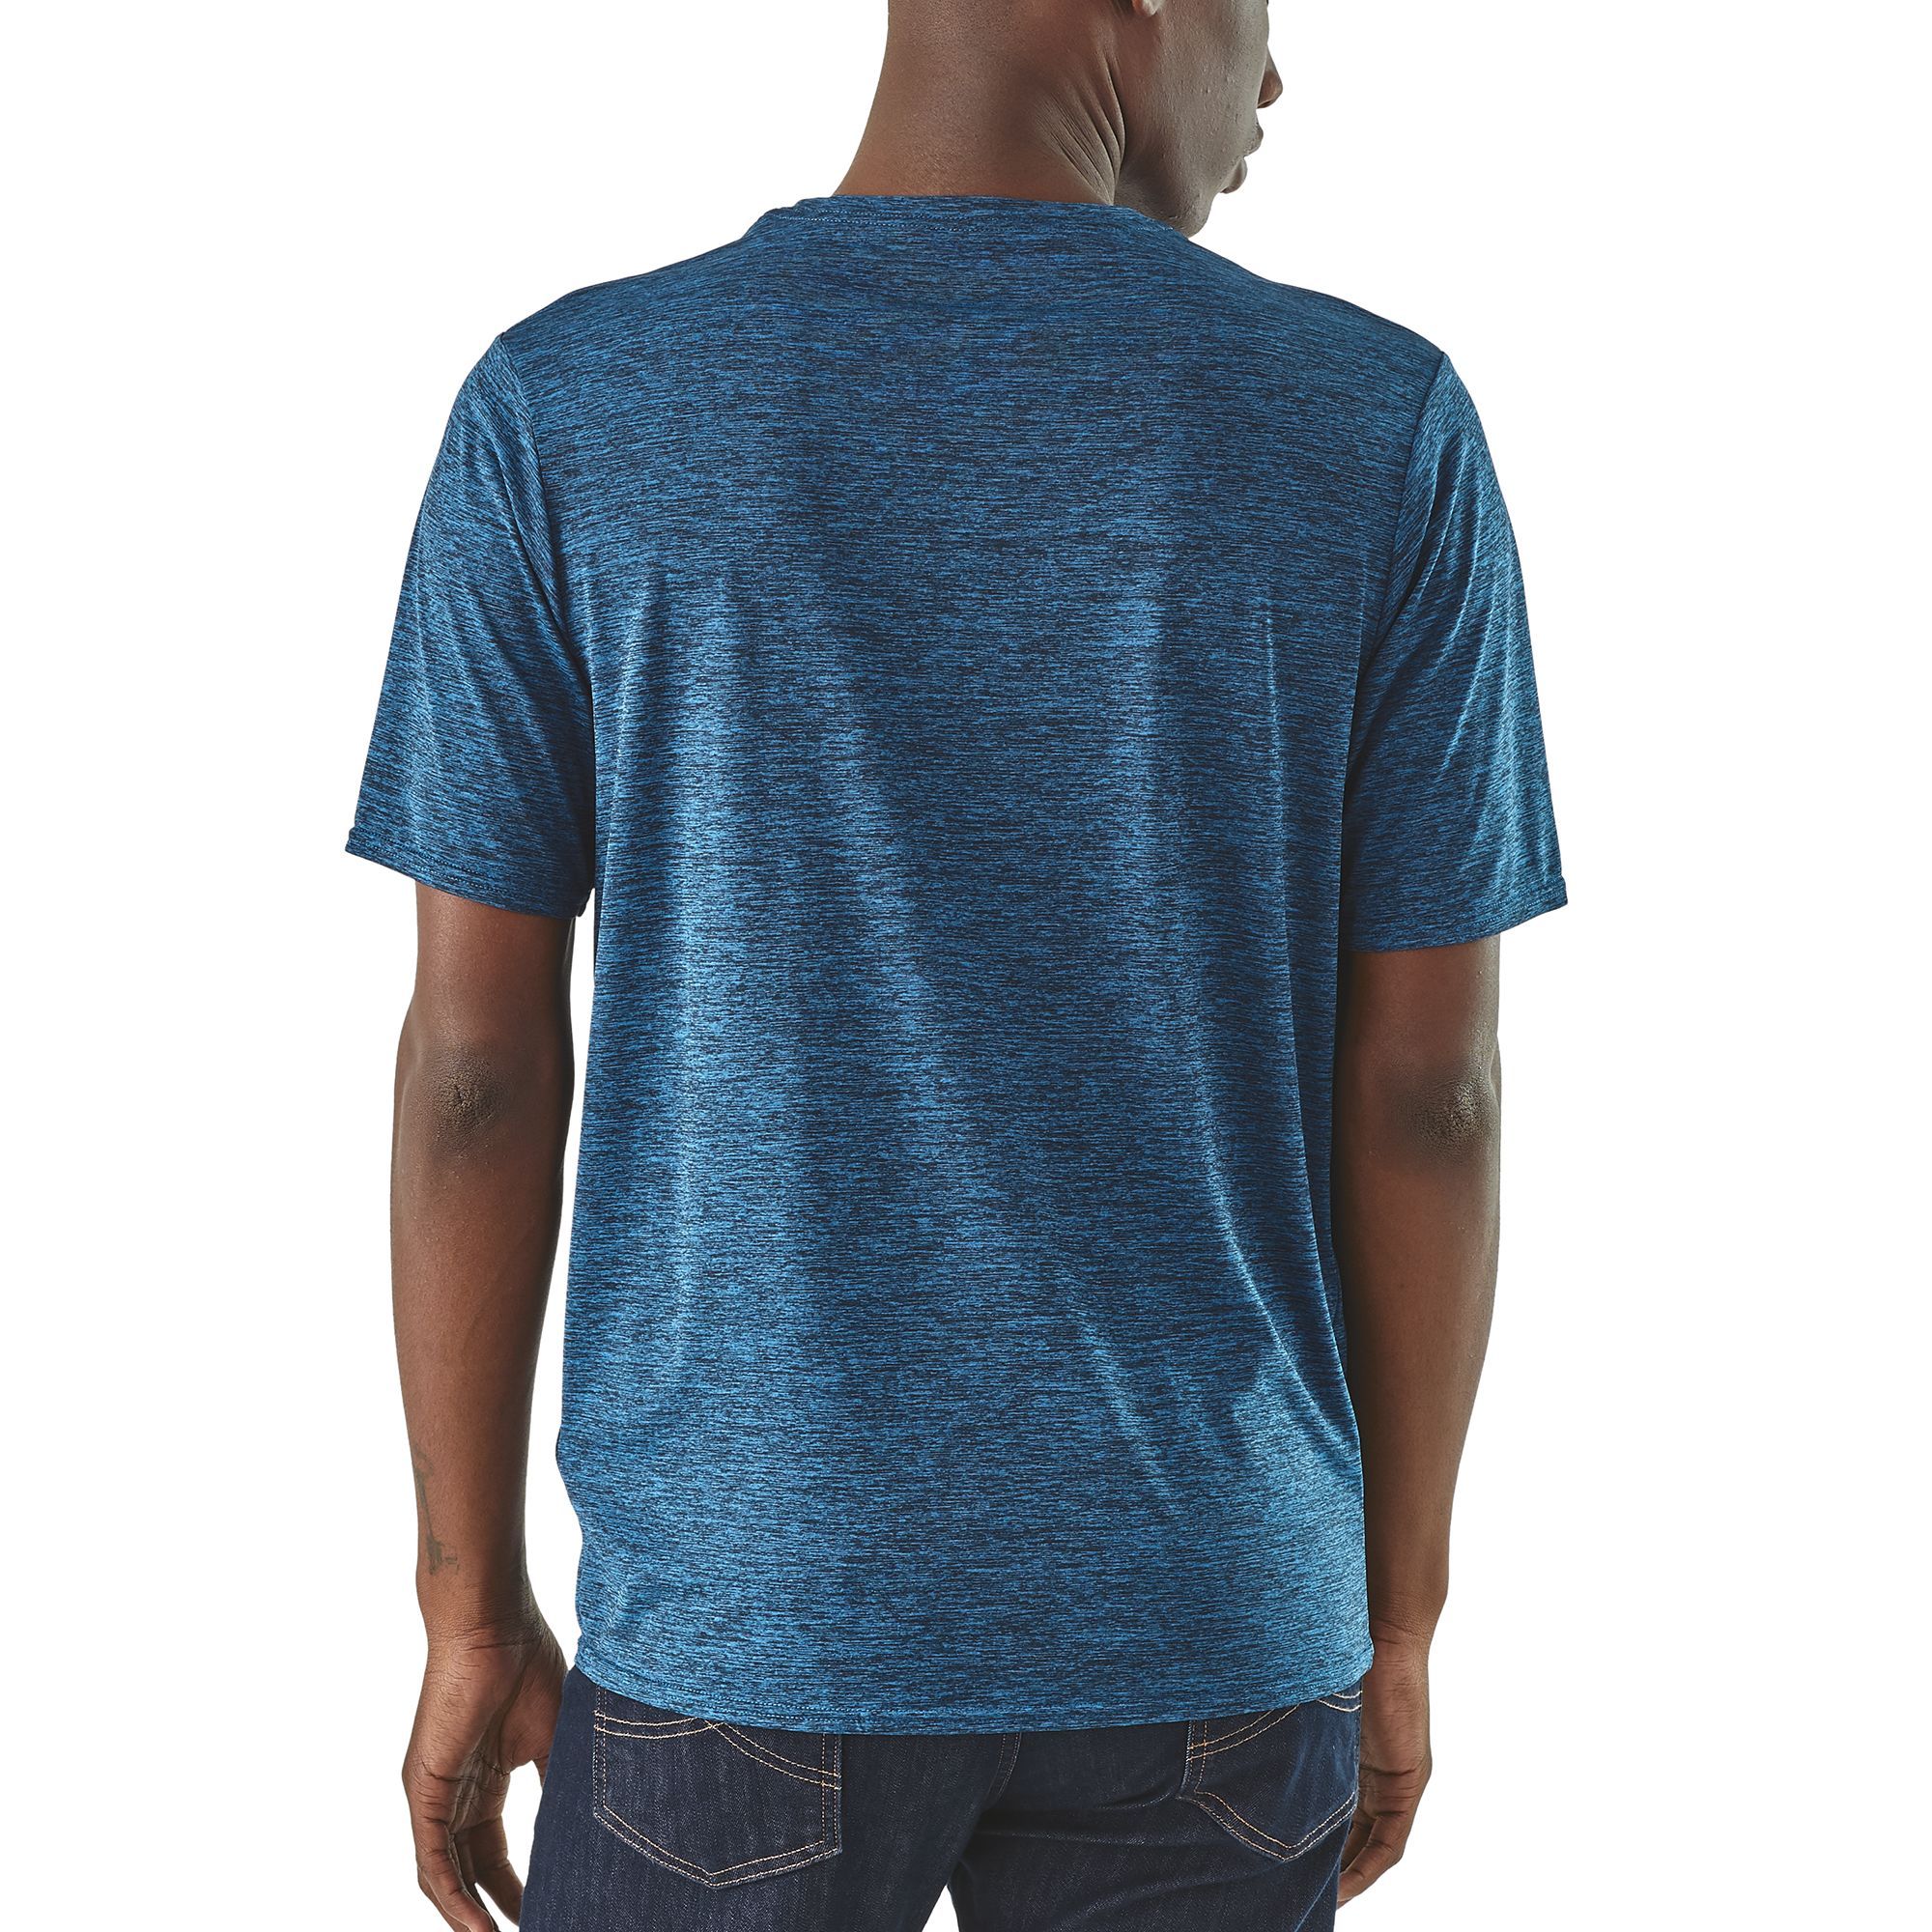 T-shirt Men's Capilene Cool Daily Shirt Bleu